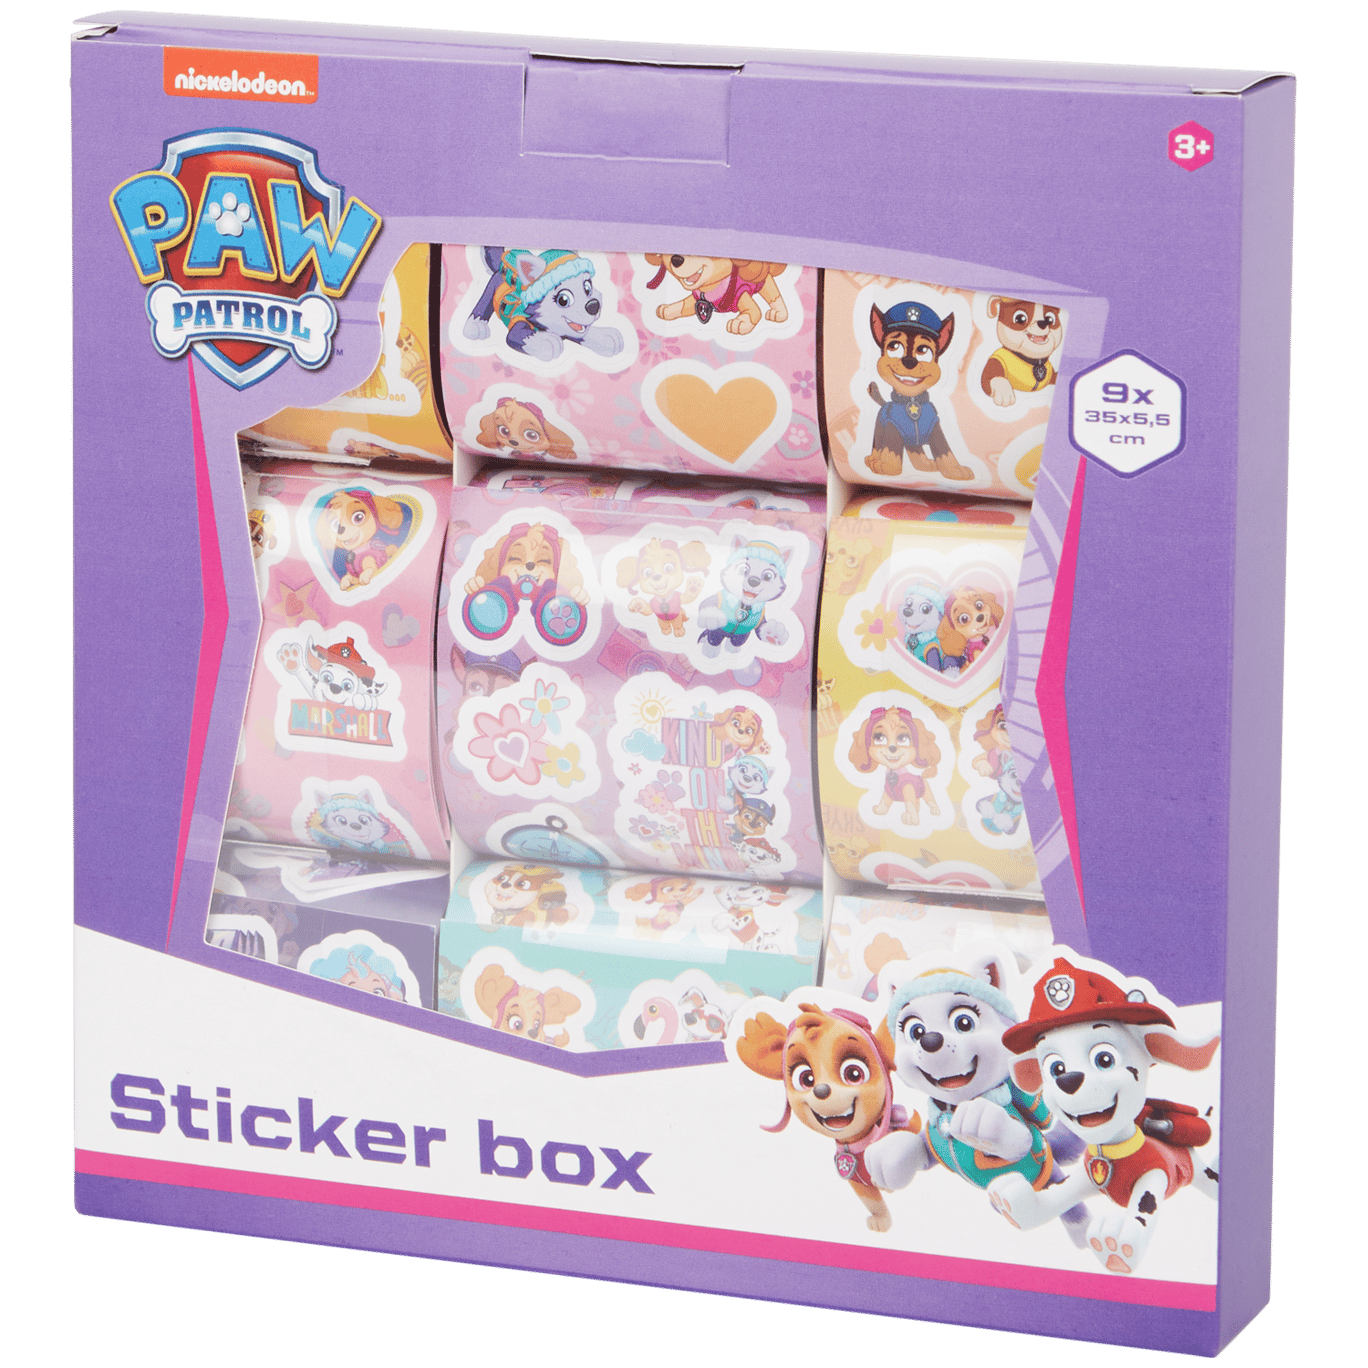 Stickerbox